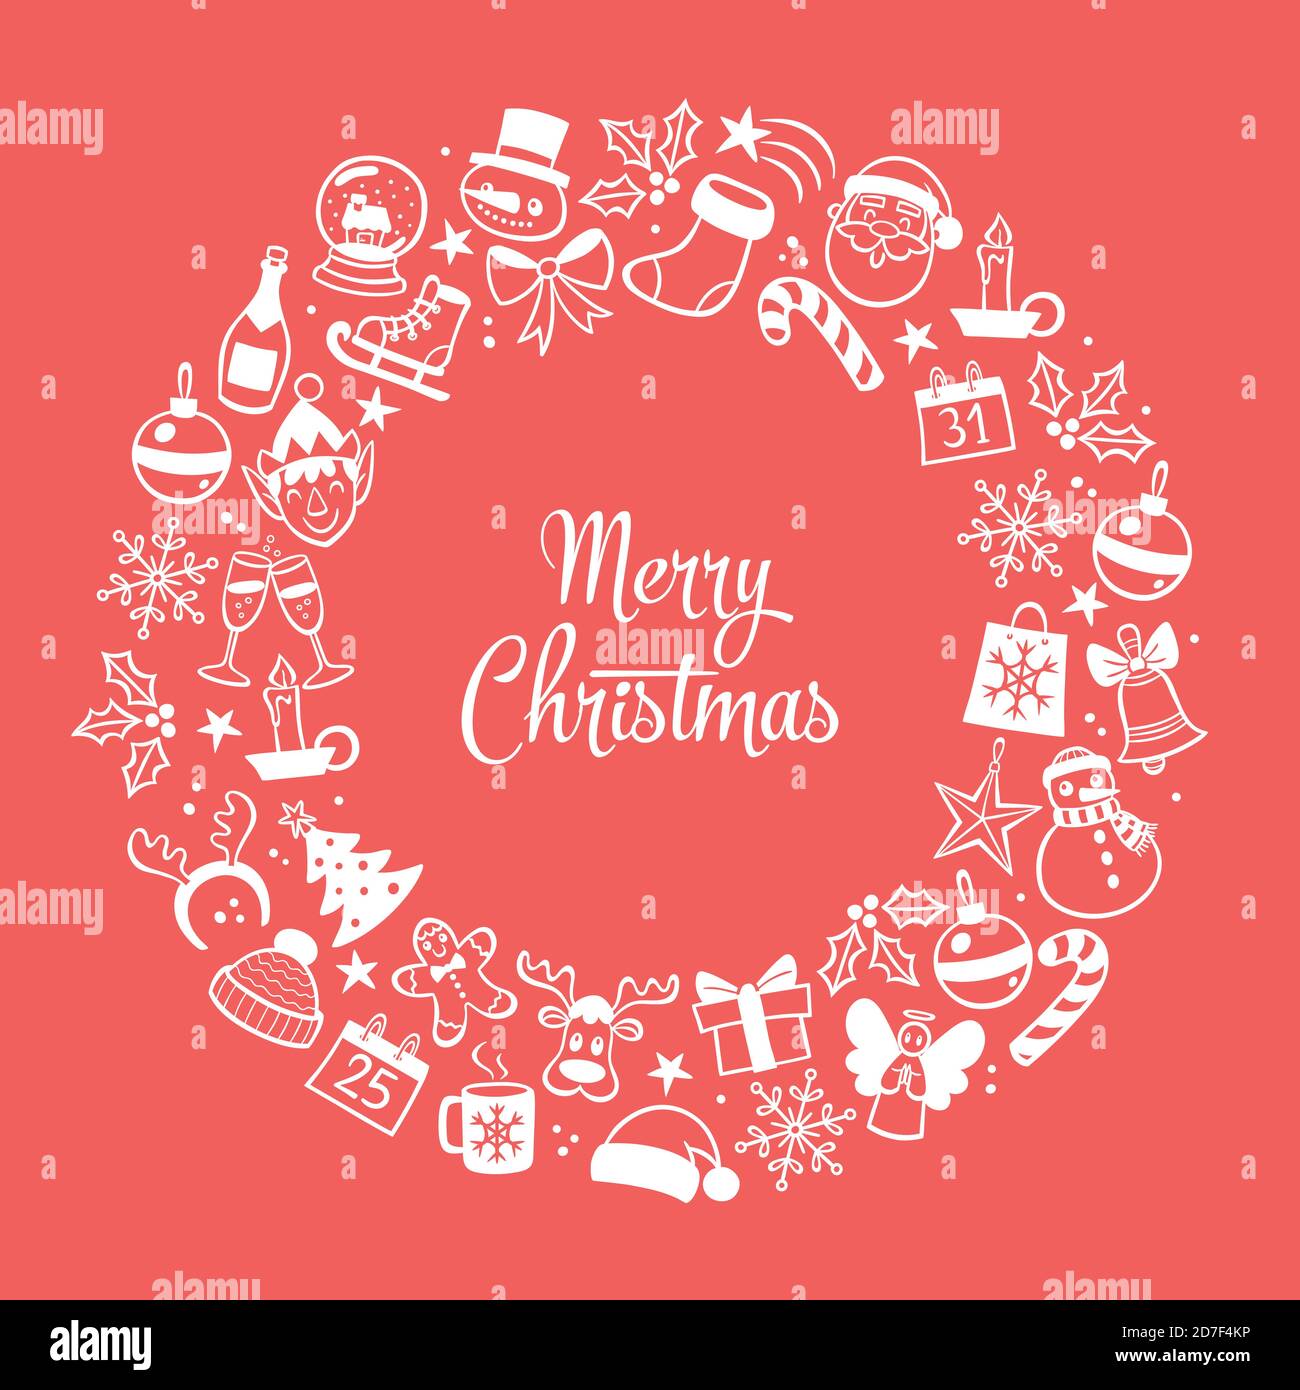 Weihnachtskarte. Roter Hintergrund mit von Hand gezeichneten umrandeten Elementen. Vektorgrafik. Stock Vektor